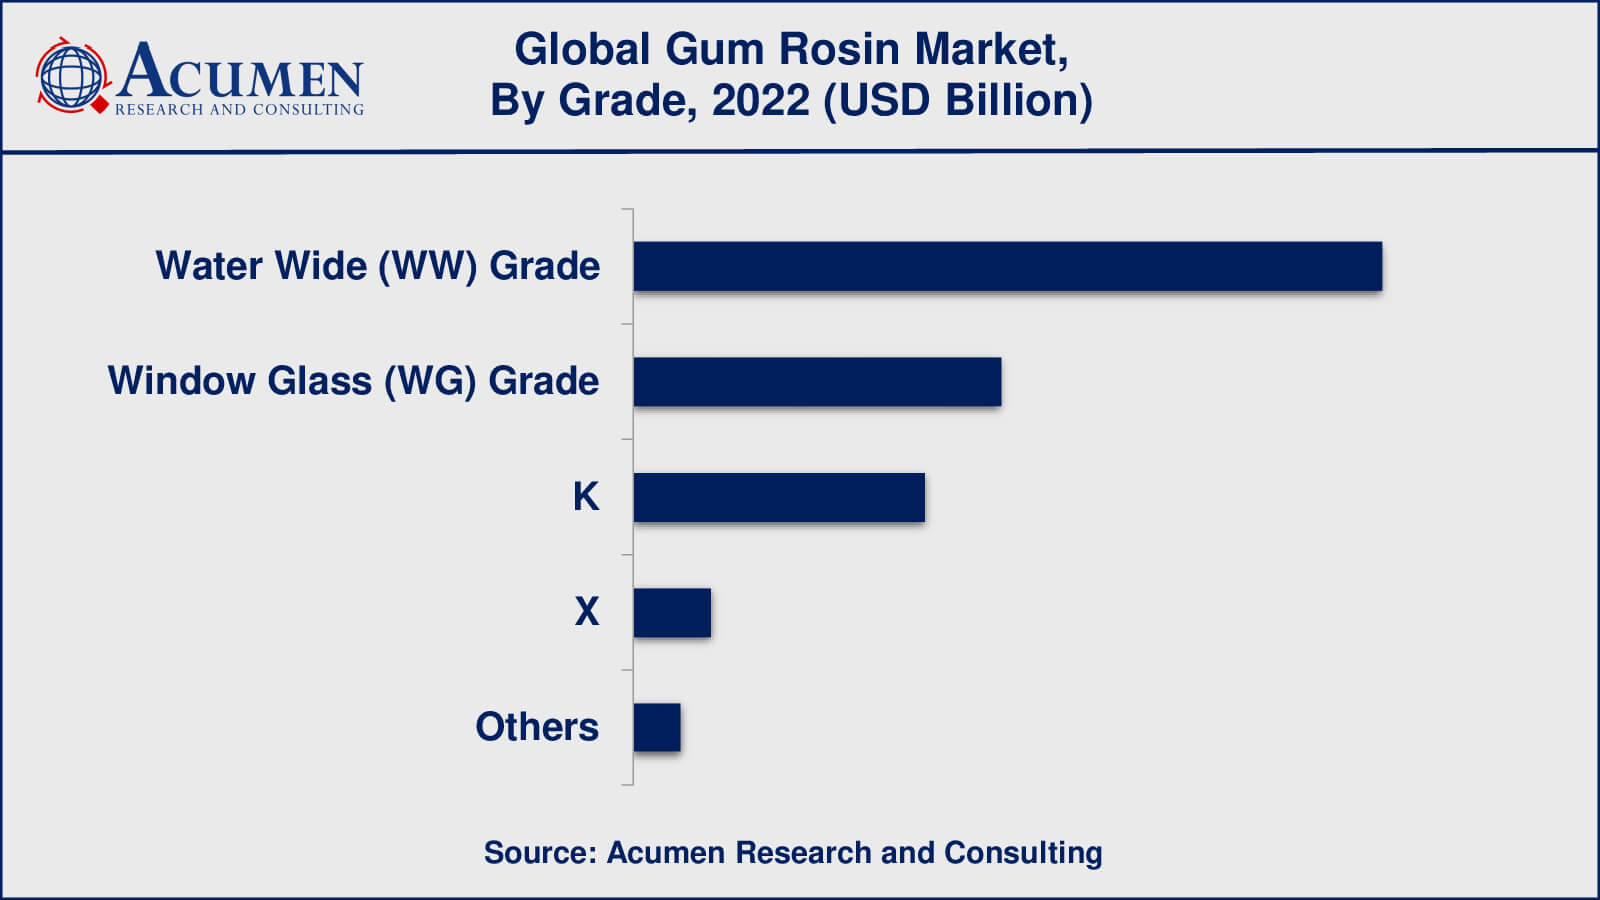 Gum Rosin Market Insights